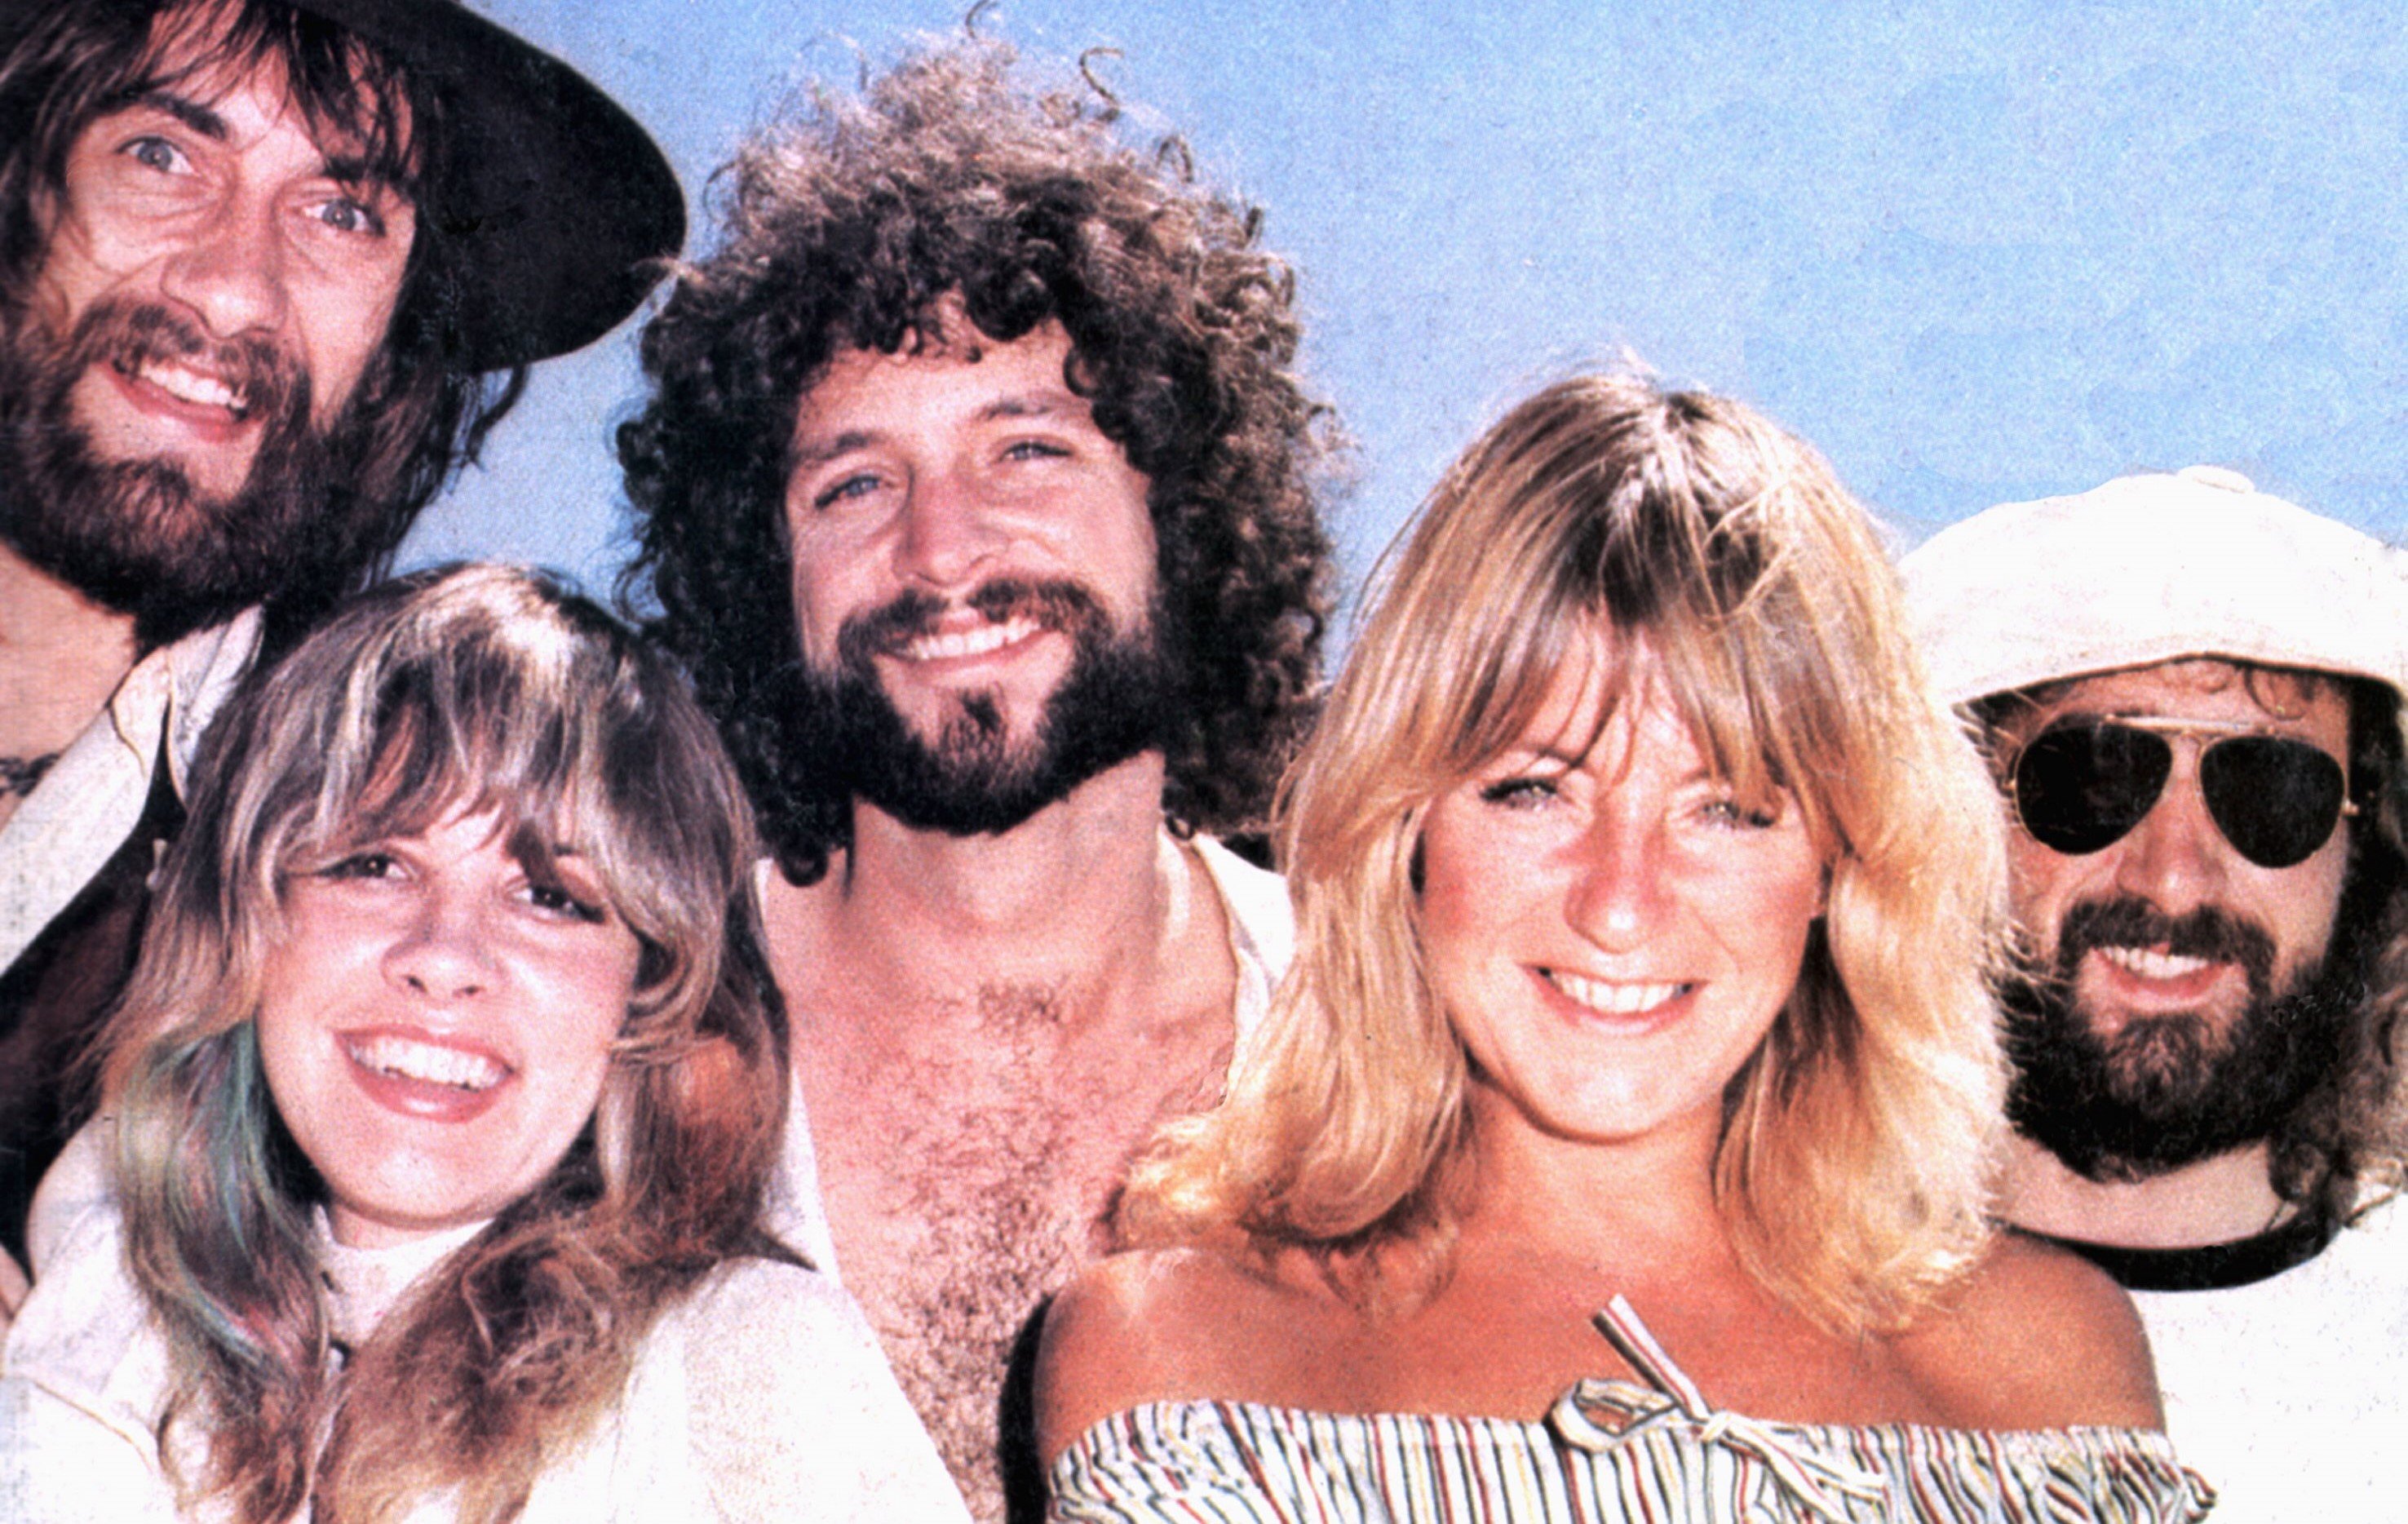 Fleetwood Mac members smiling